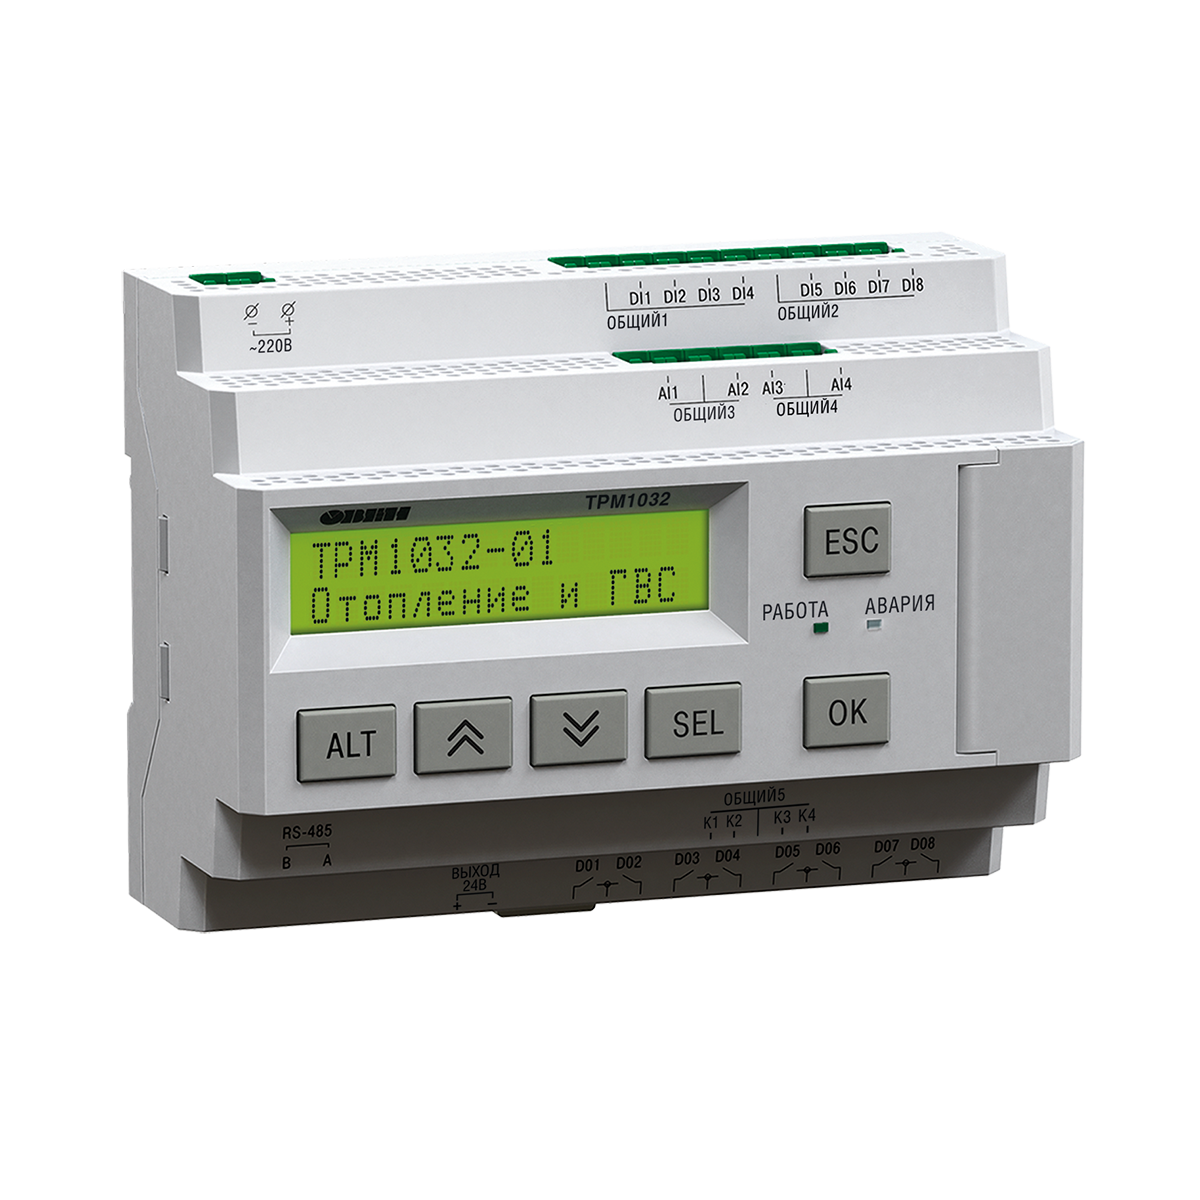 ТРМ1032М-11.30.И – устройство с готовой логикой для автоматизации контуров отопления и ГВС в ИТП/ЦТП.